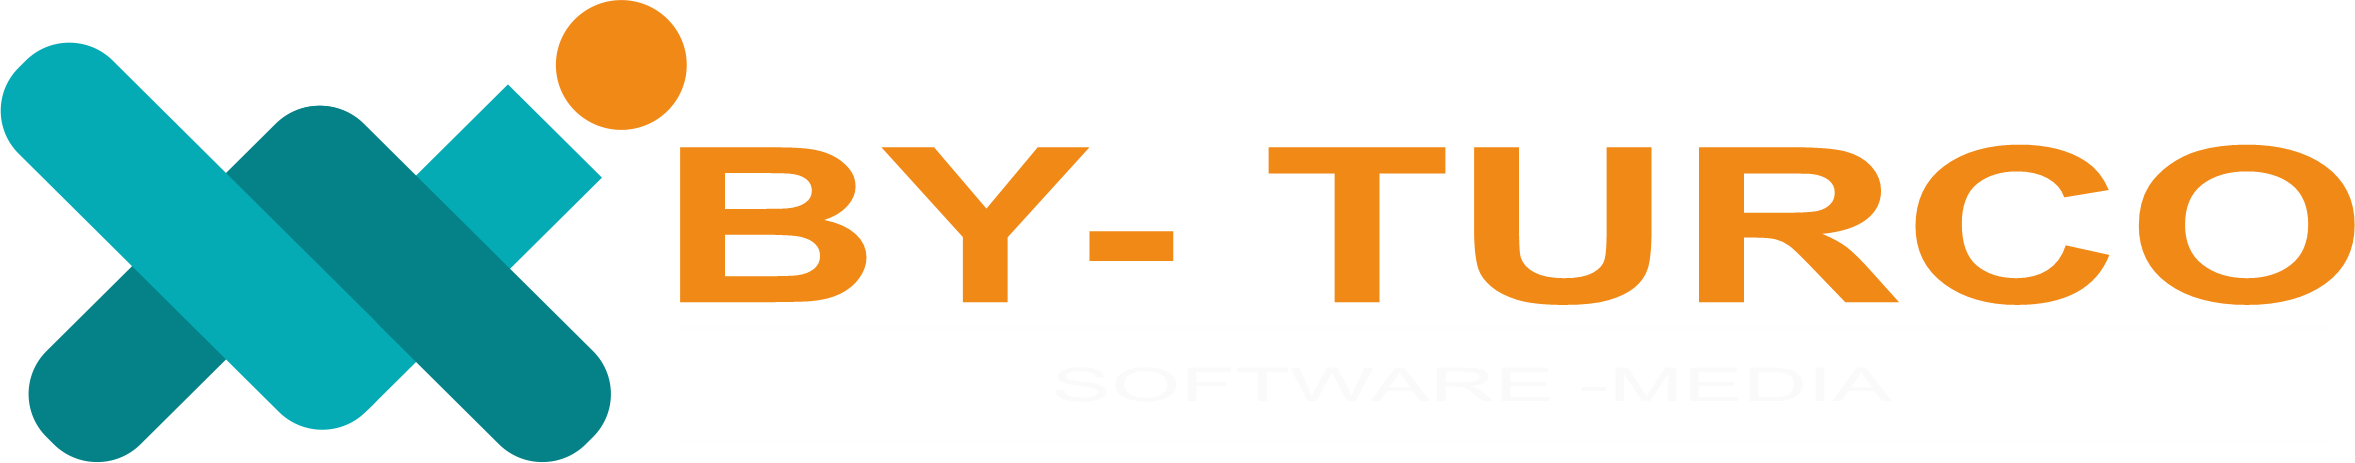 yonetim_logo